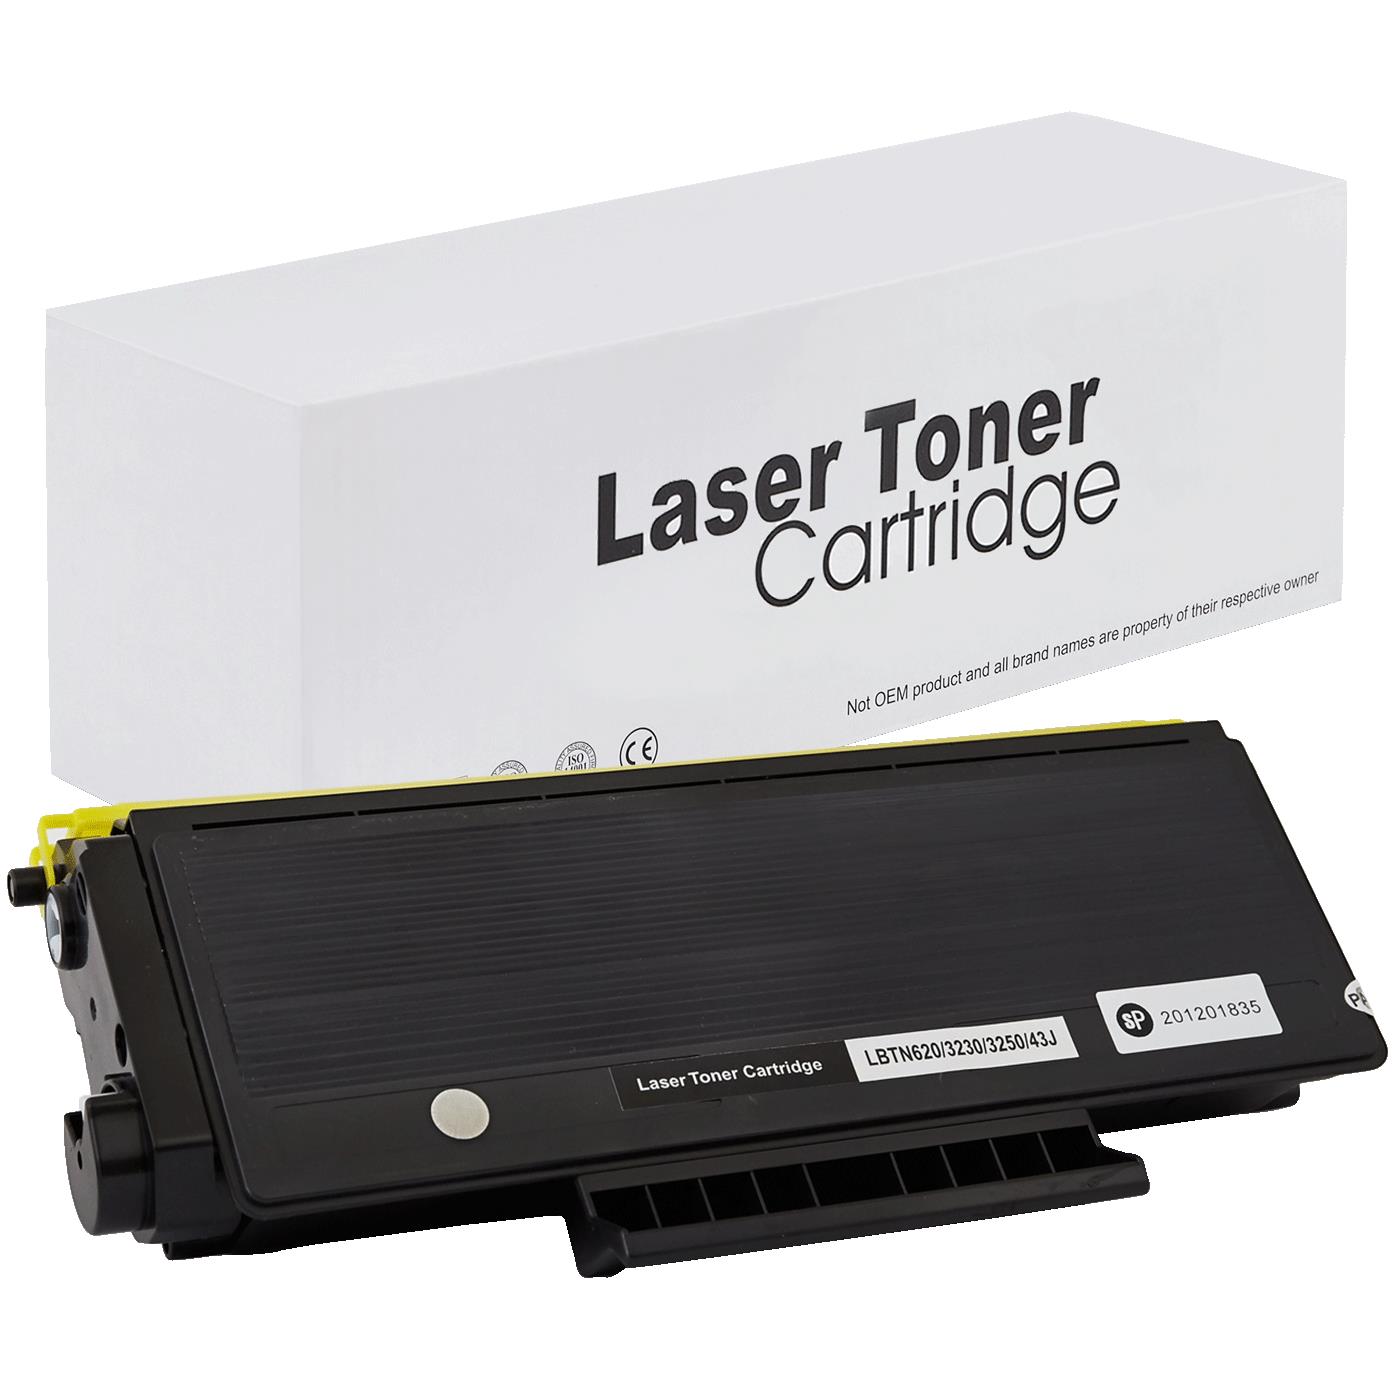 съвместима тонер касета за принтери и печатащи устройства на Brother HL 5340 DN 2 LT Toner BR-3230 | TN3230. Ниски цени, прецизно изпълнение, високо качество.